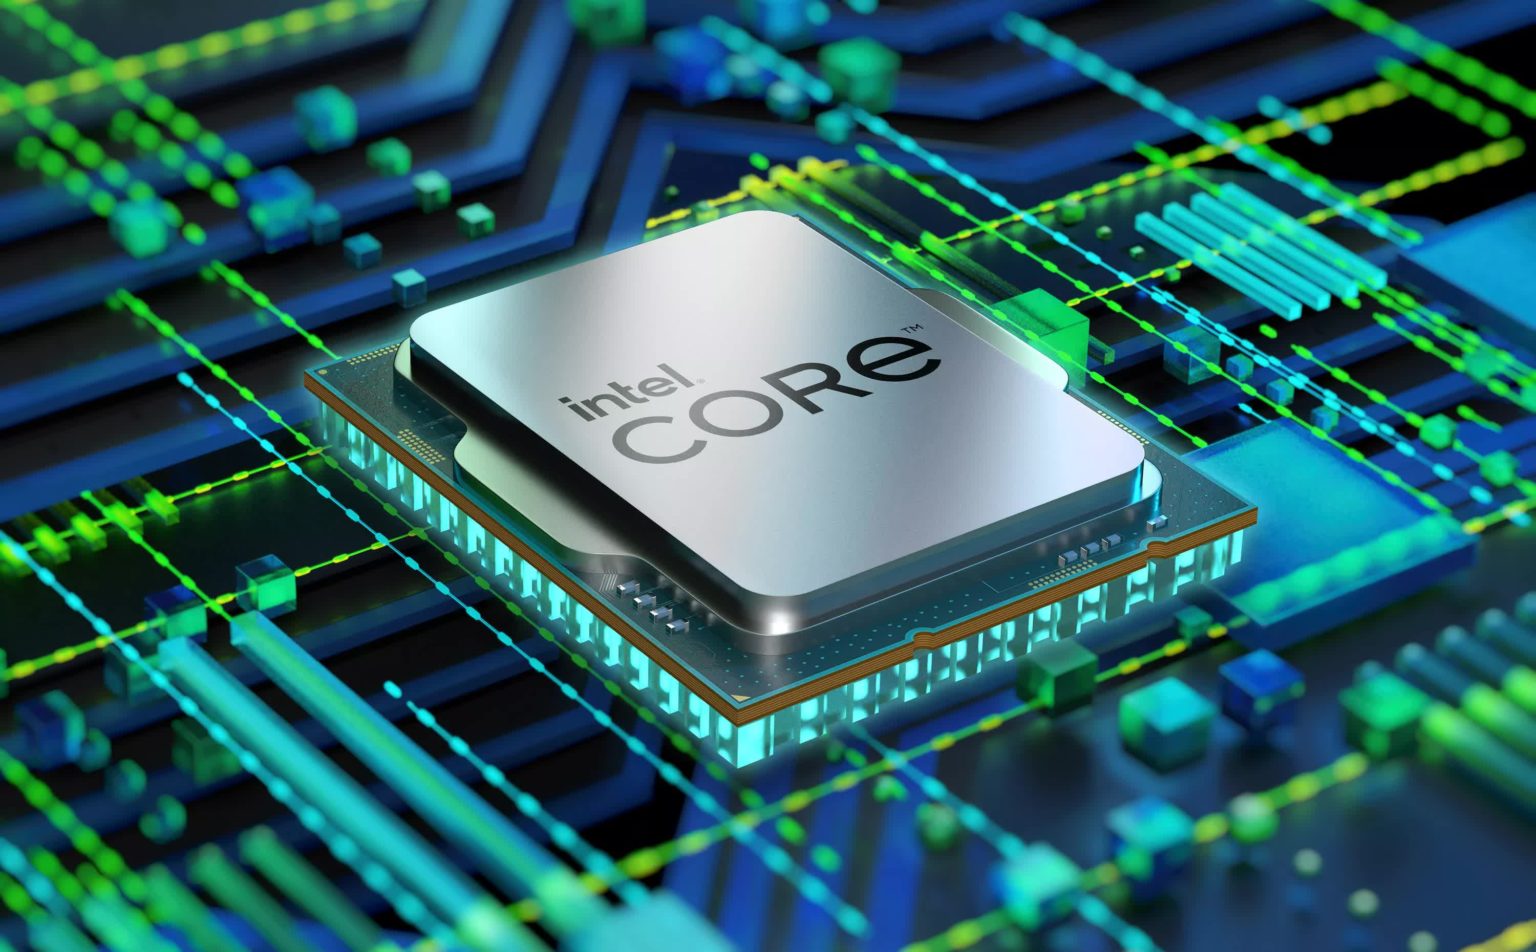 Upcoming Intel CPUs could push maximum temperature limits to 105 Celsius